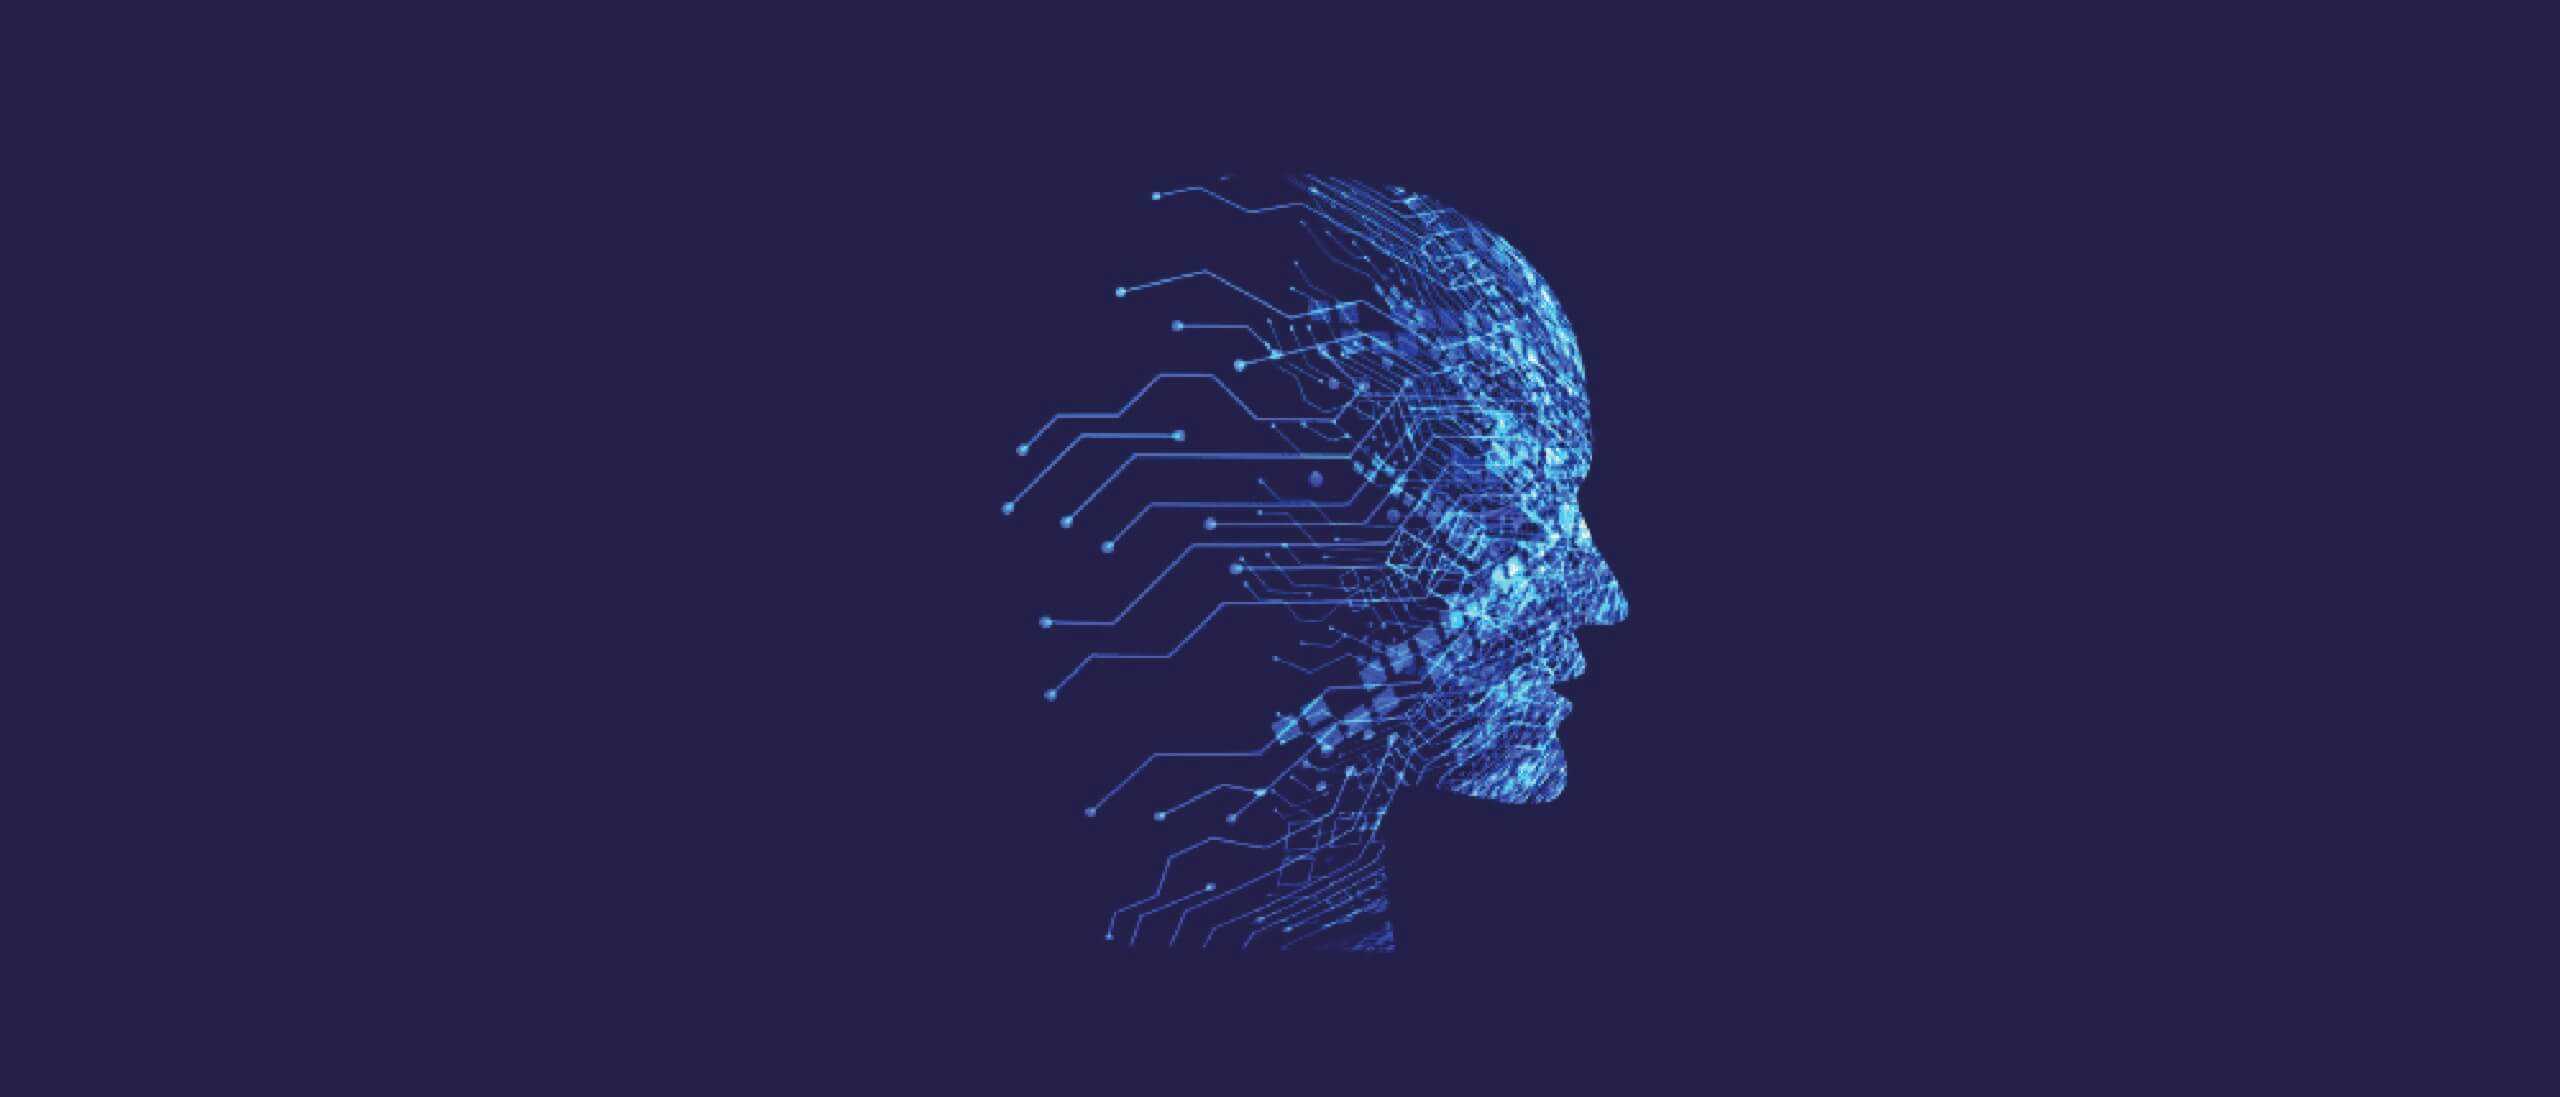 [EduVIP] Khóa học trí tuệ nhân tạo (AI) cho mọi người